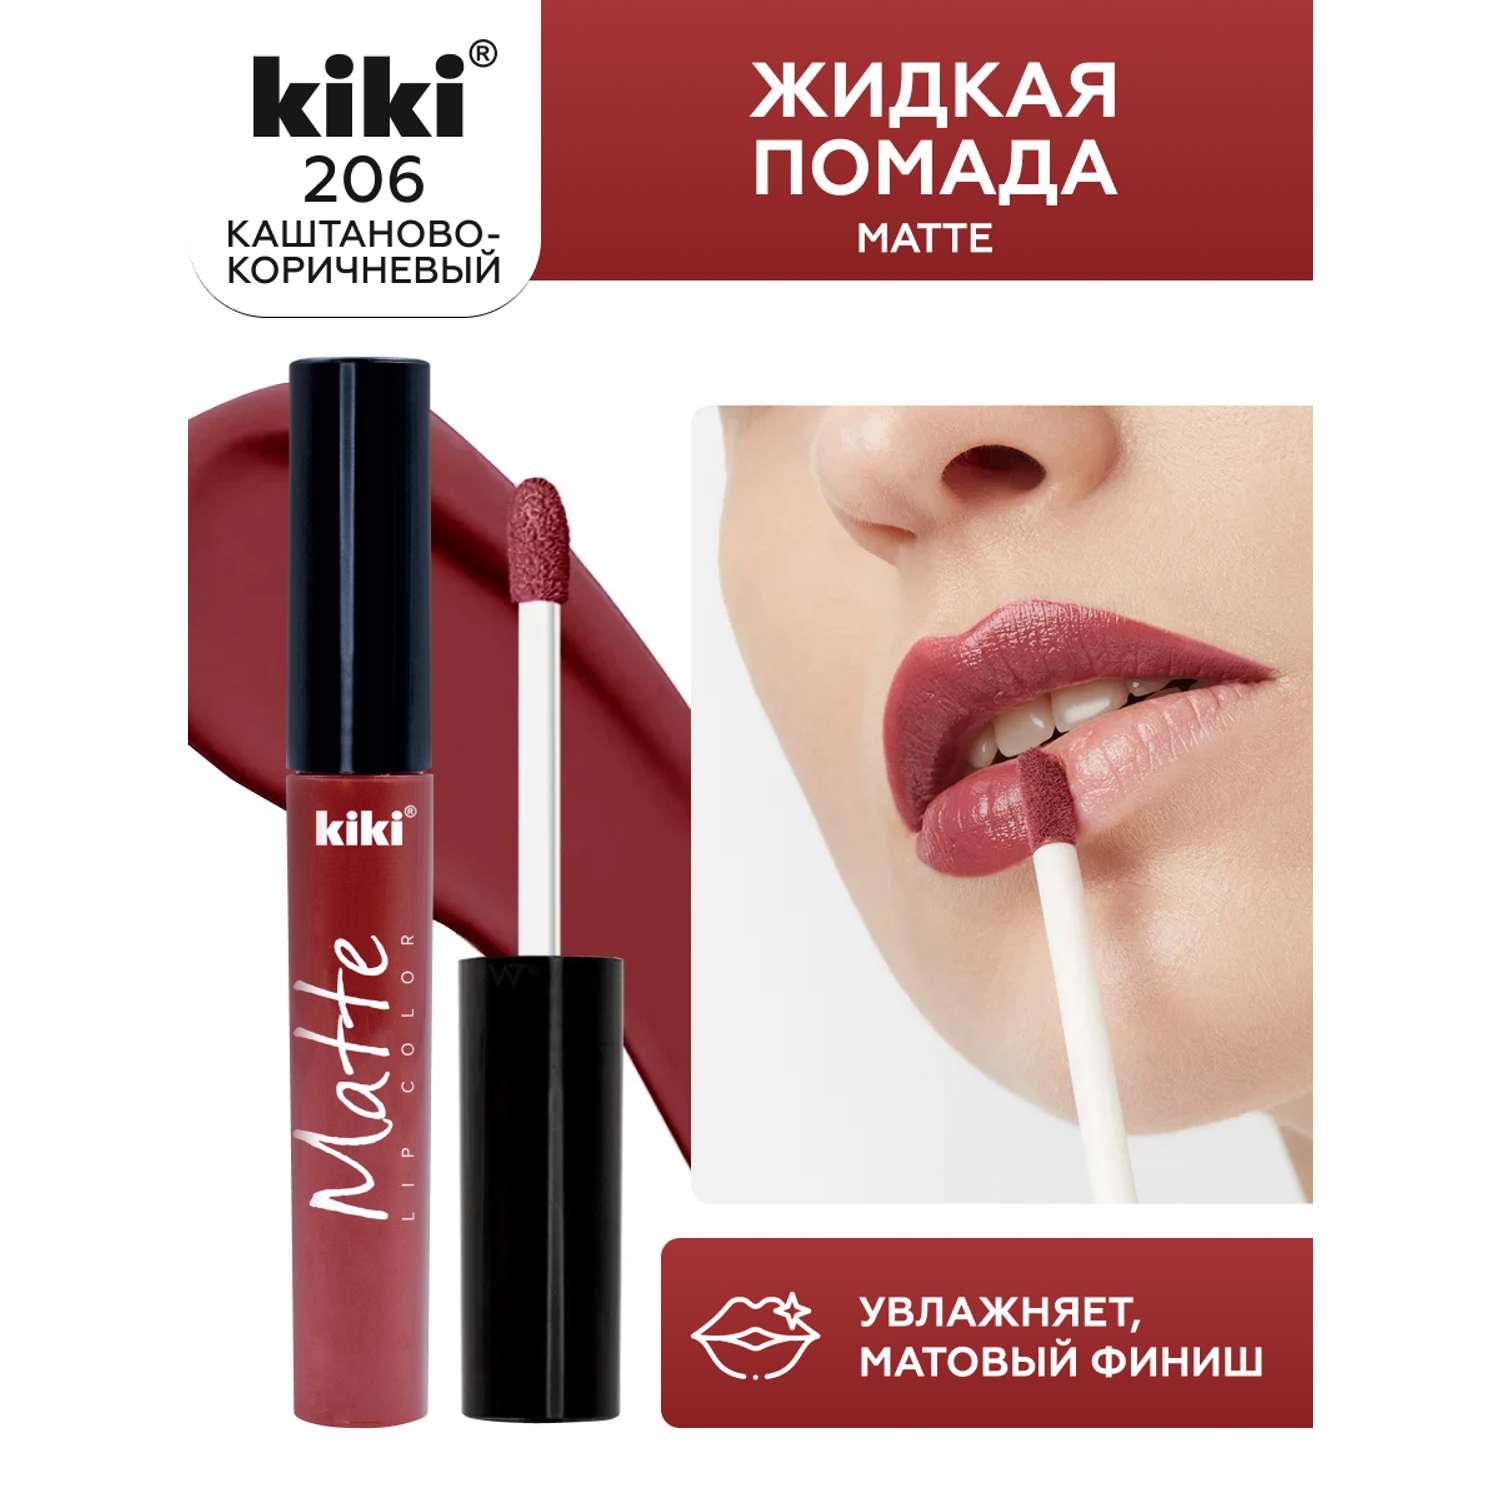 Жидкая помада для губ KIKI Matte lip color 206 каштаново-коричневый - фото 1